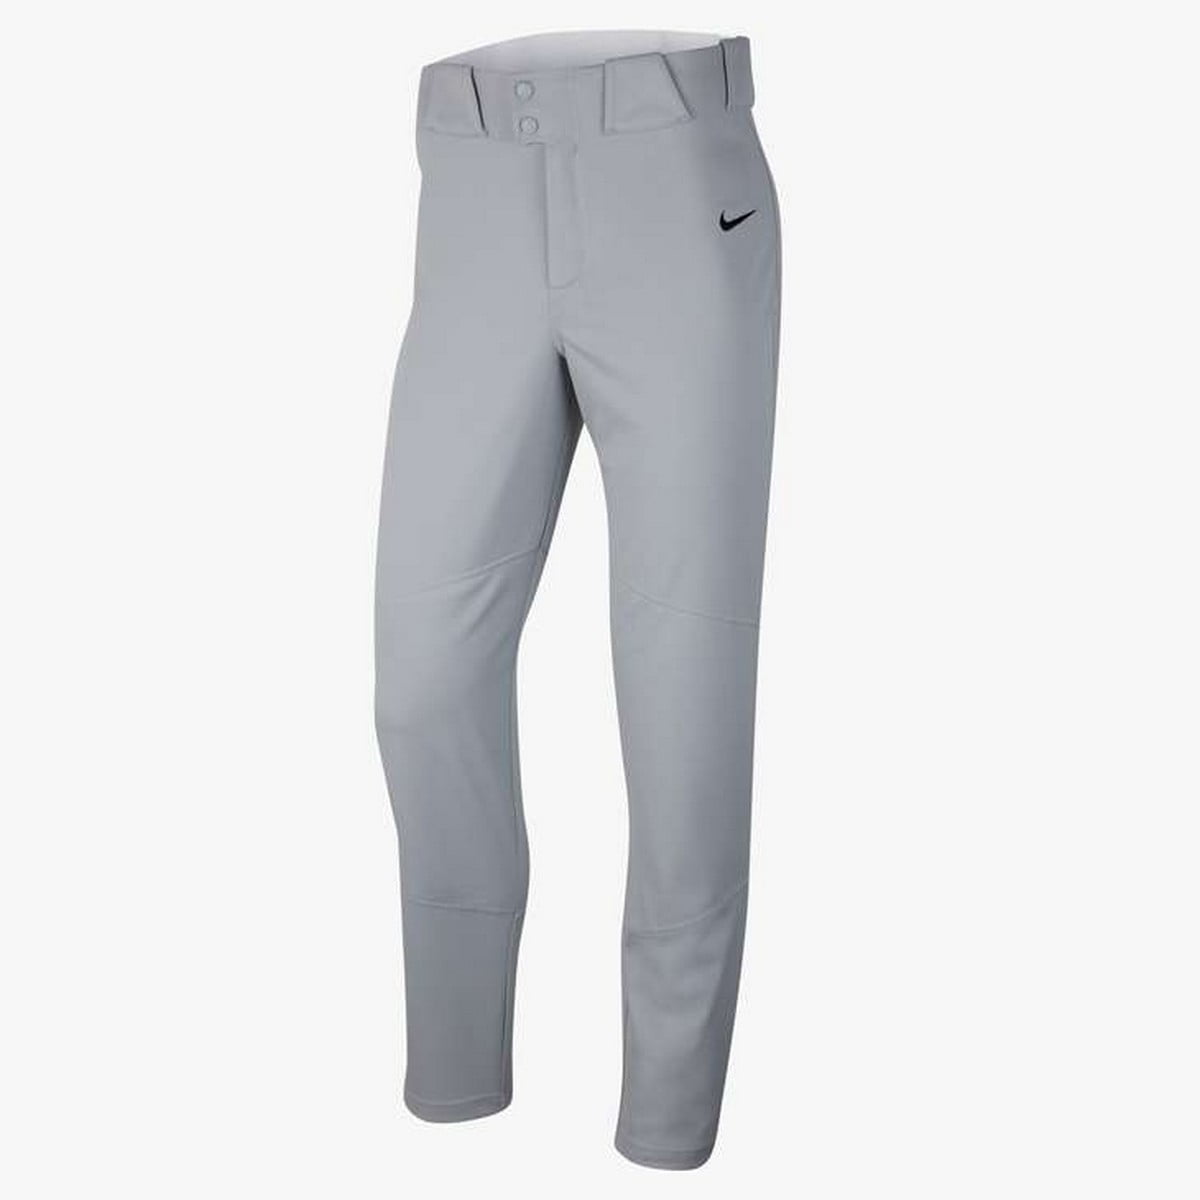 Nike Men's Vapor Select Baseball Pants - Walmart.com